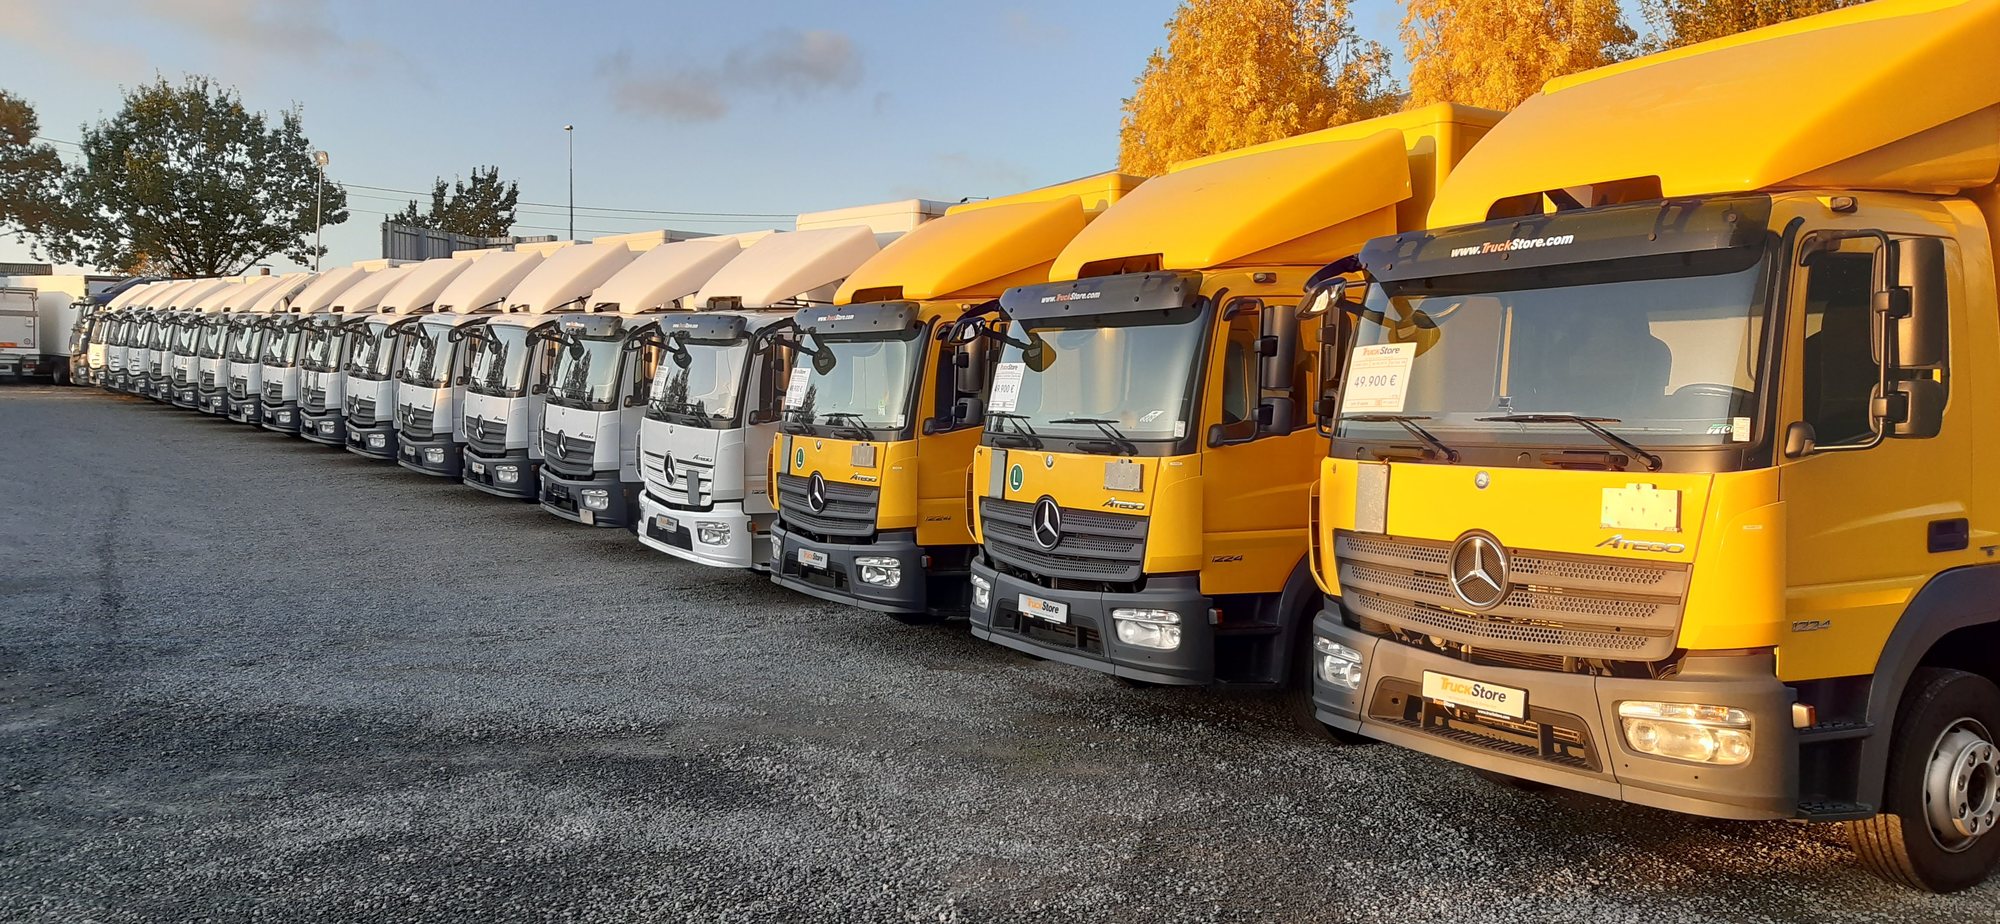 TruckStore Brussels - Satılık araçlar undefined: fotoğraf 1